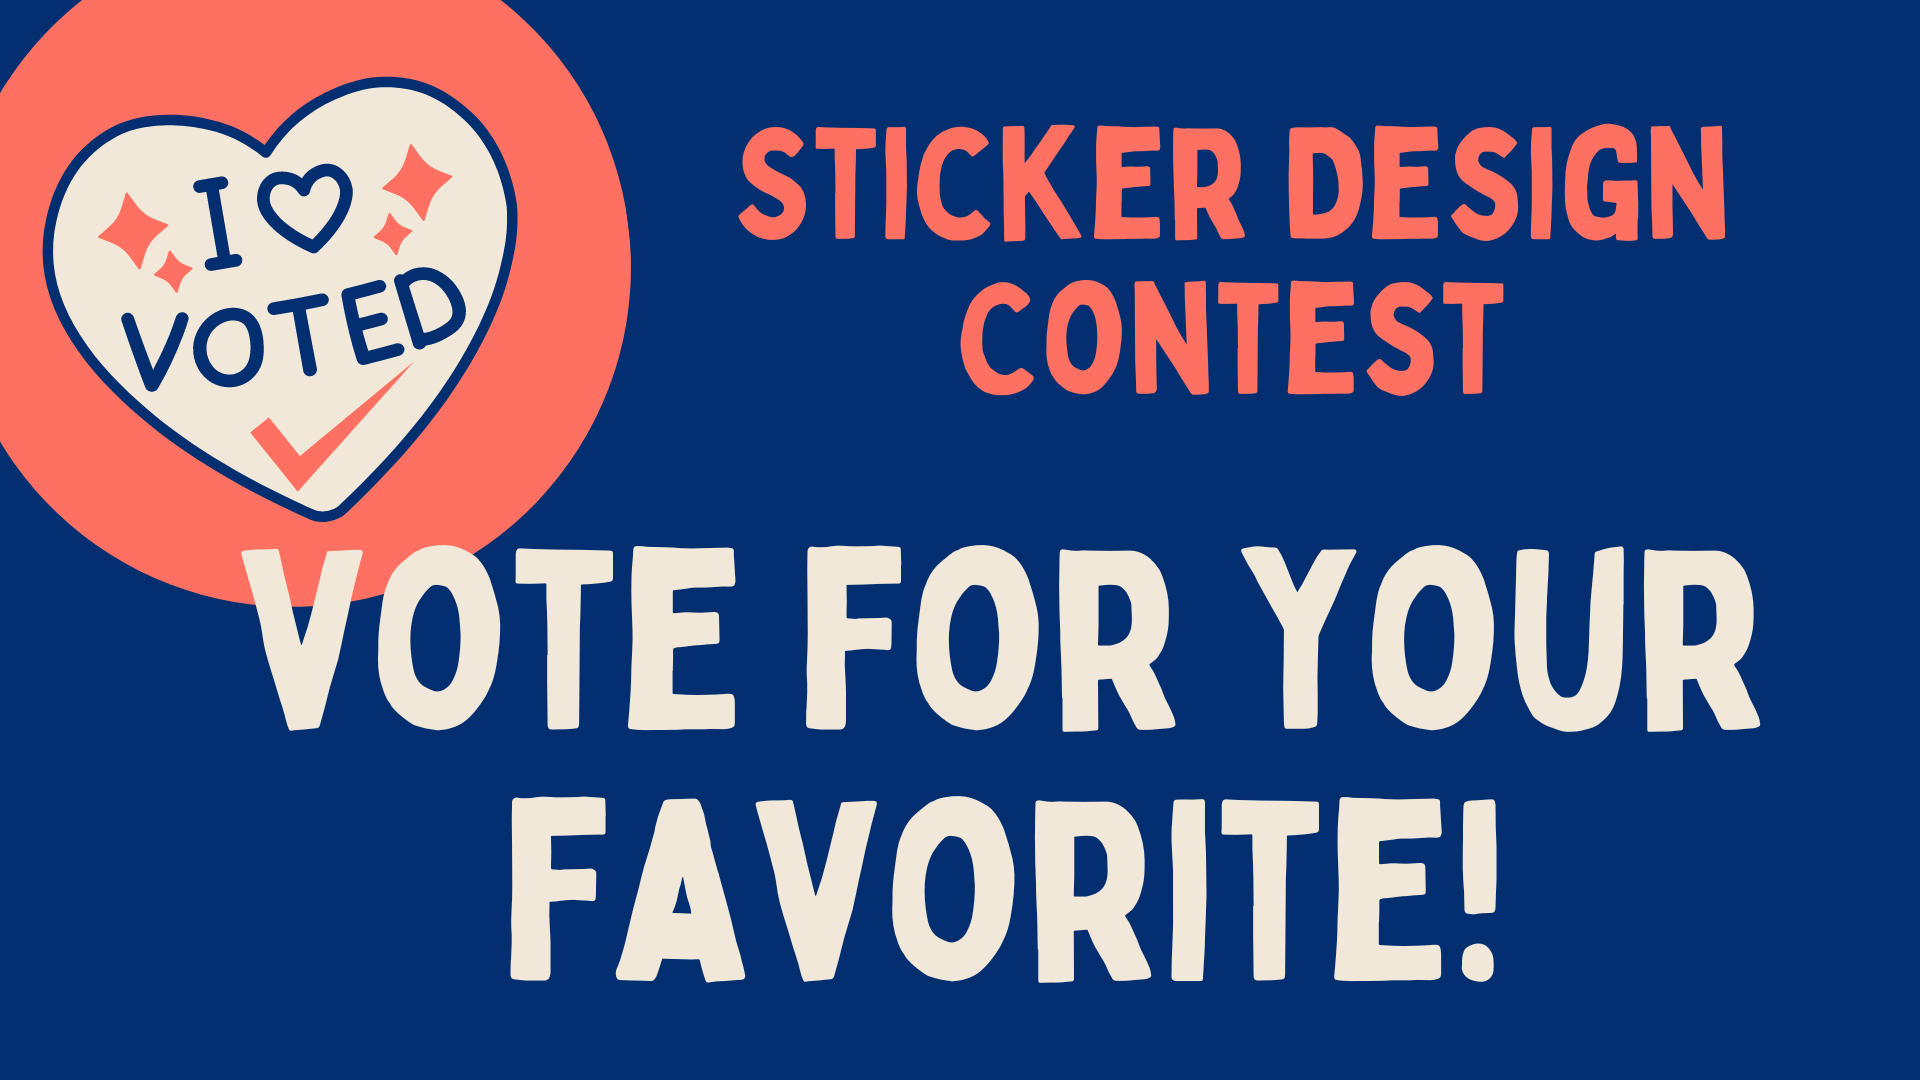 vote for your favorite sticker design contest words on dark blue background